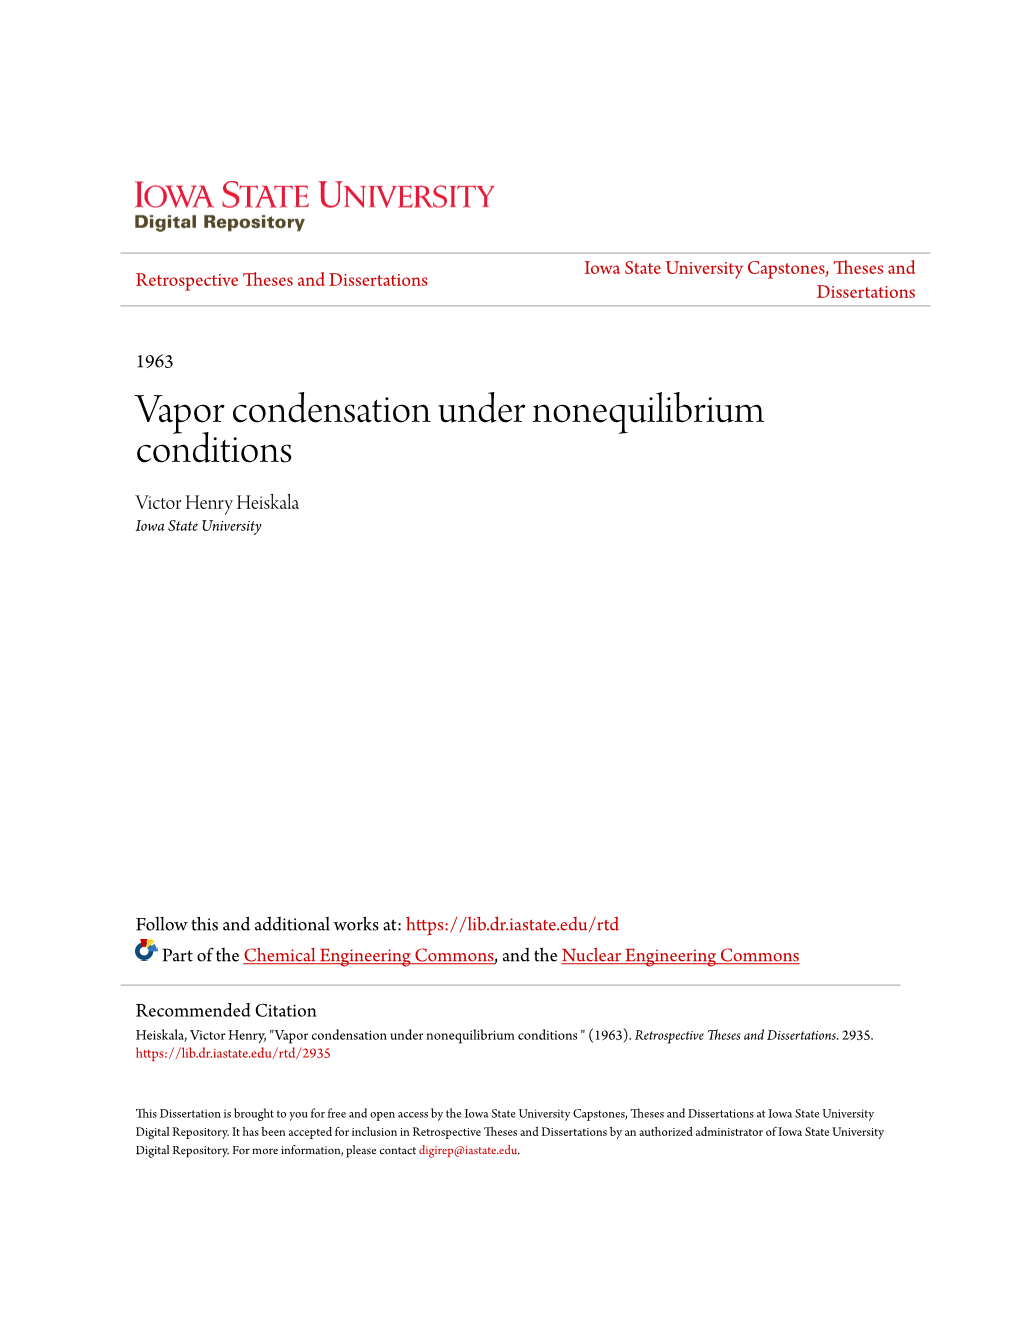 Vapor Condensation Under Nonequilibrium Conditions Victor Henry Heiskala Iowa State University